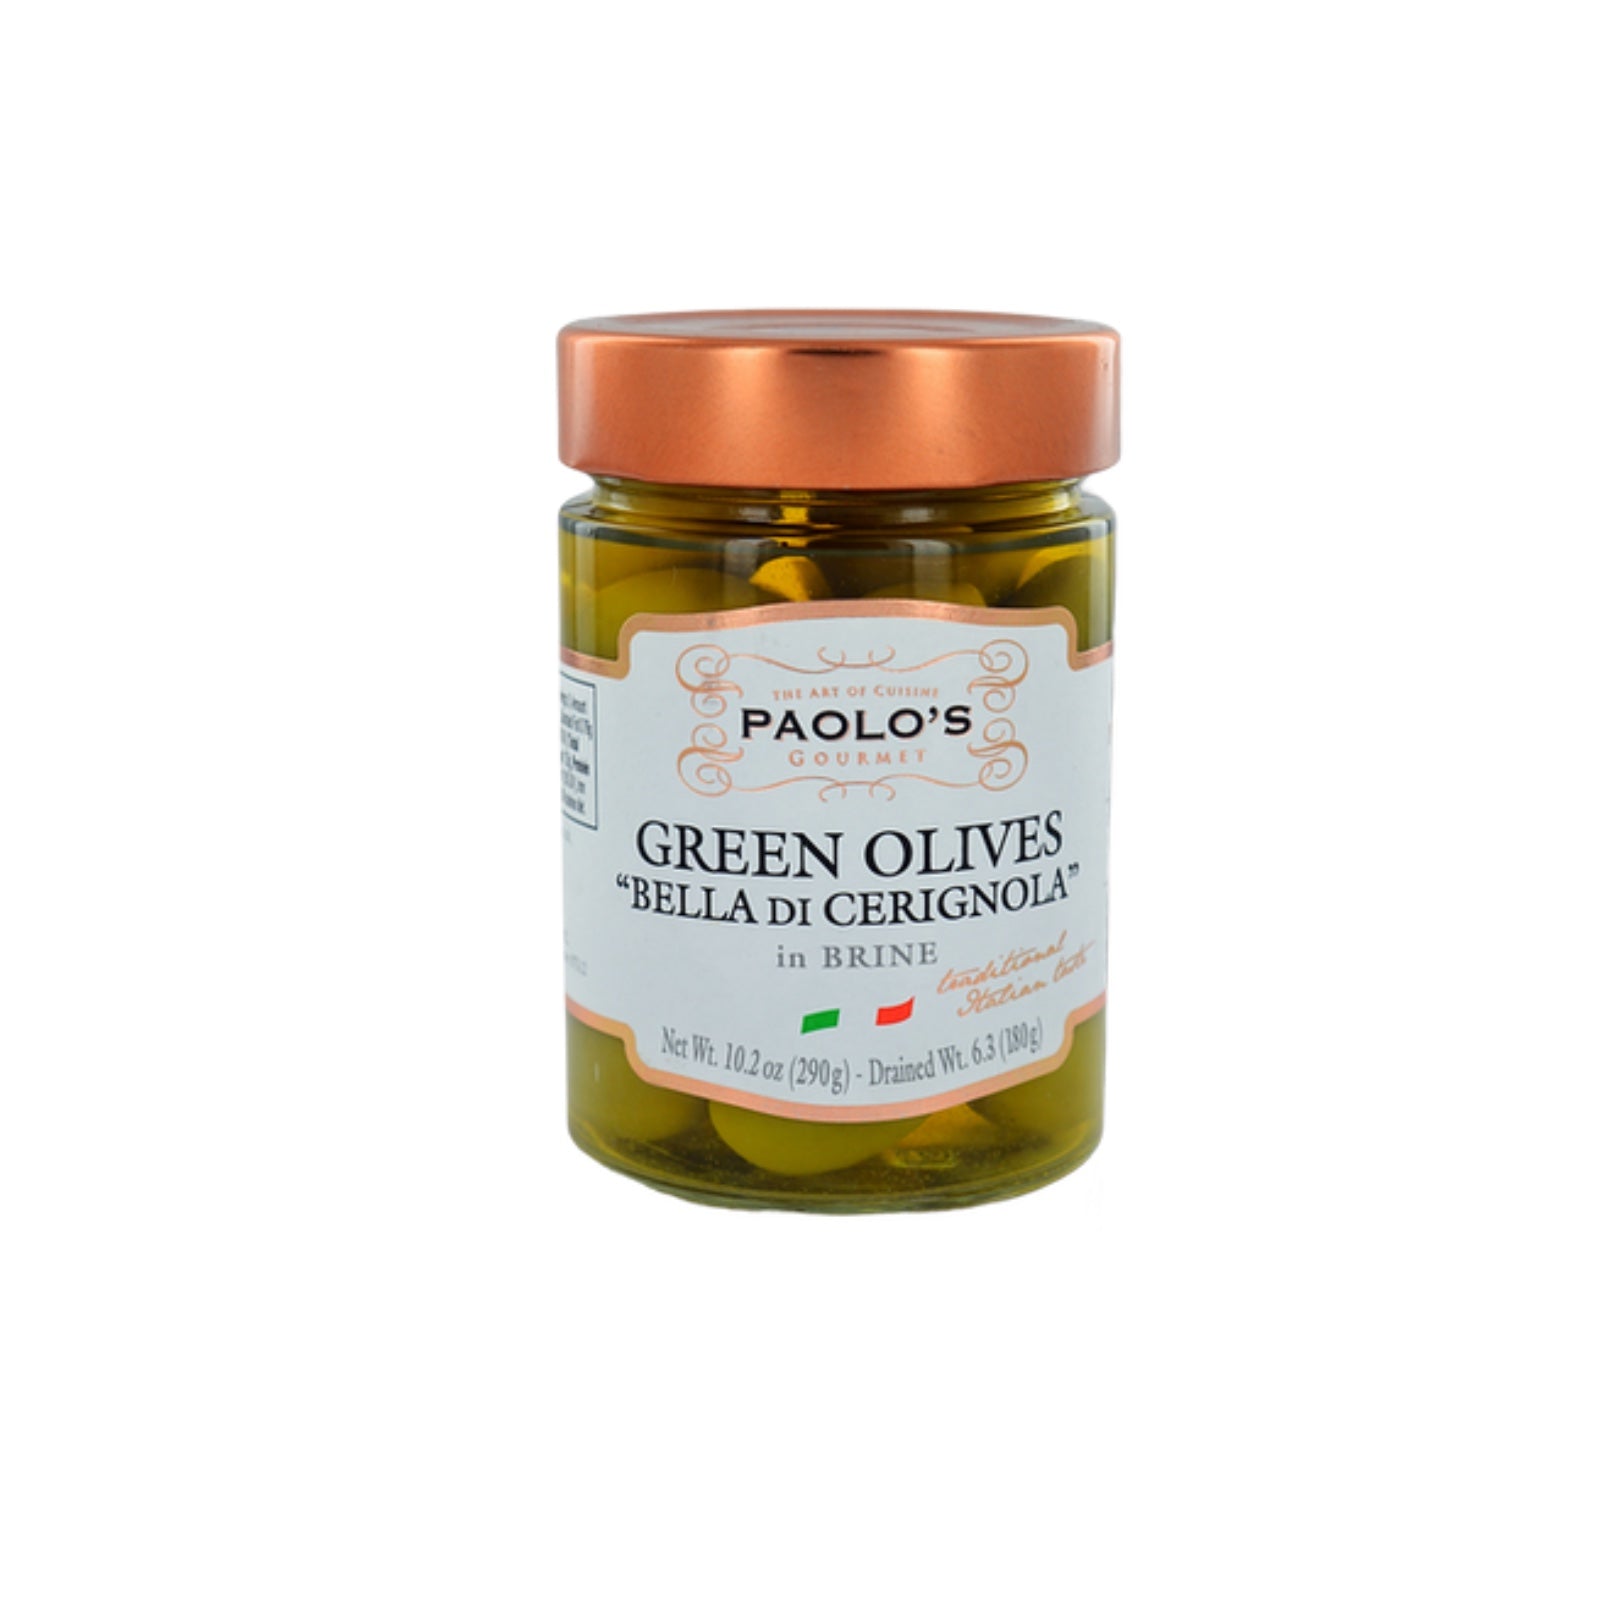 Green Olives “Bella di Cerignola”